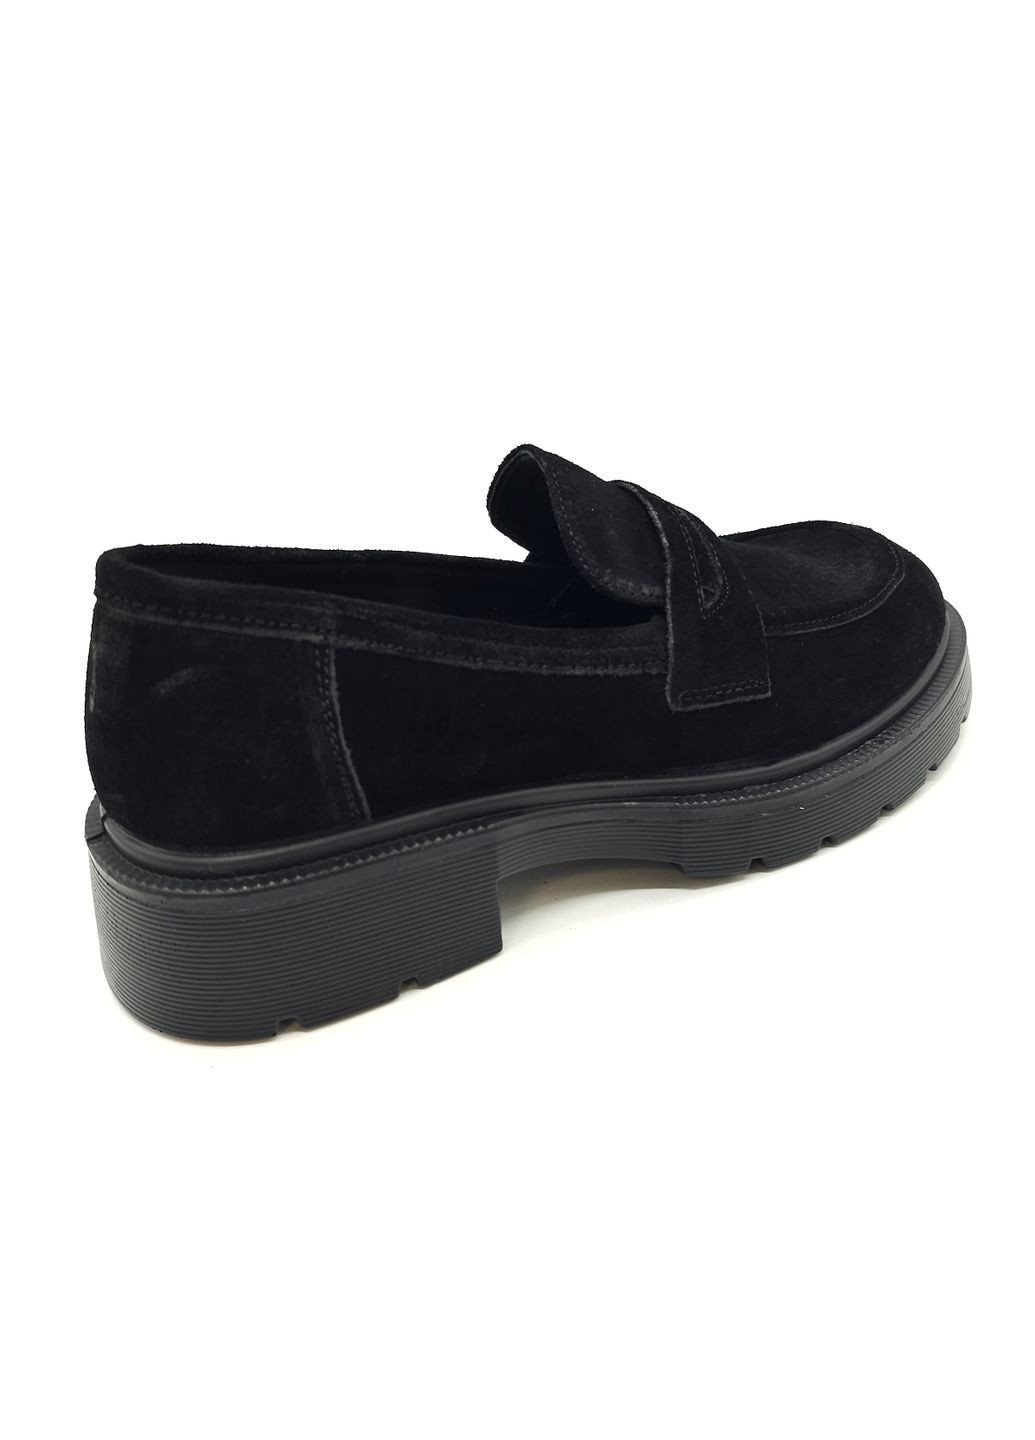 Жіночі туфлі чорні замшеві PP-19-10 24 см (р) PL PS (260379982)